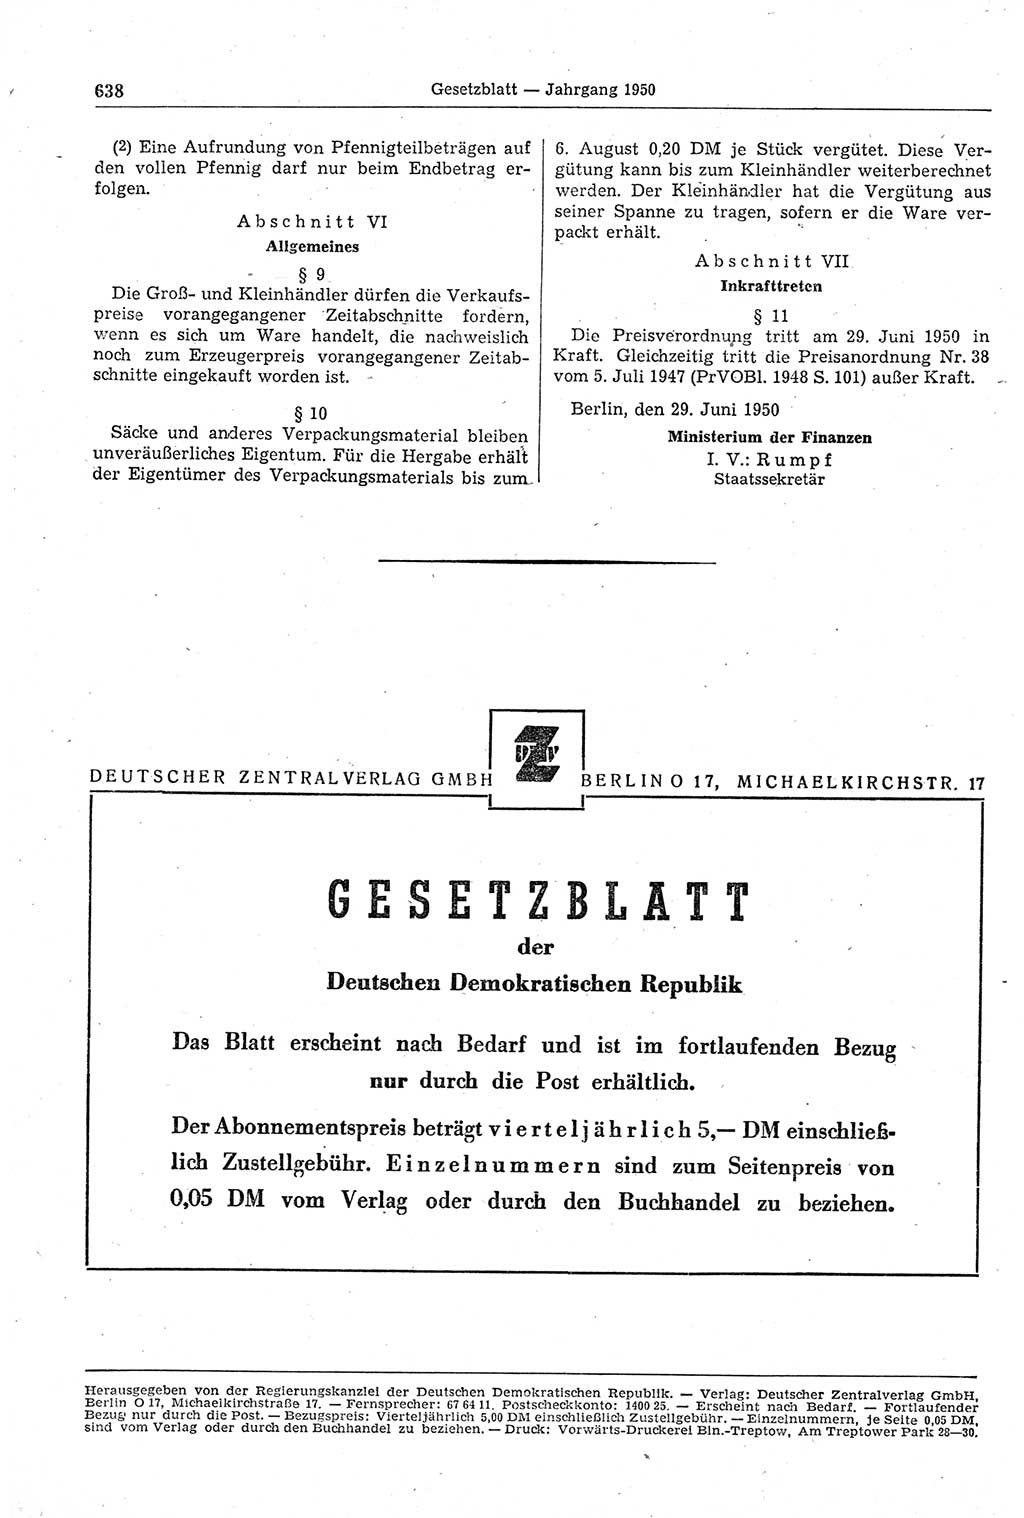 Gesetzblatt (GBl.) der Deutschen Demokratischen Republik (DDR) 1950, Seite 638 (GBl. DDR 1950, S. 638)